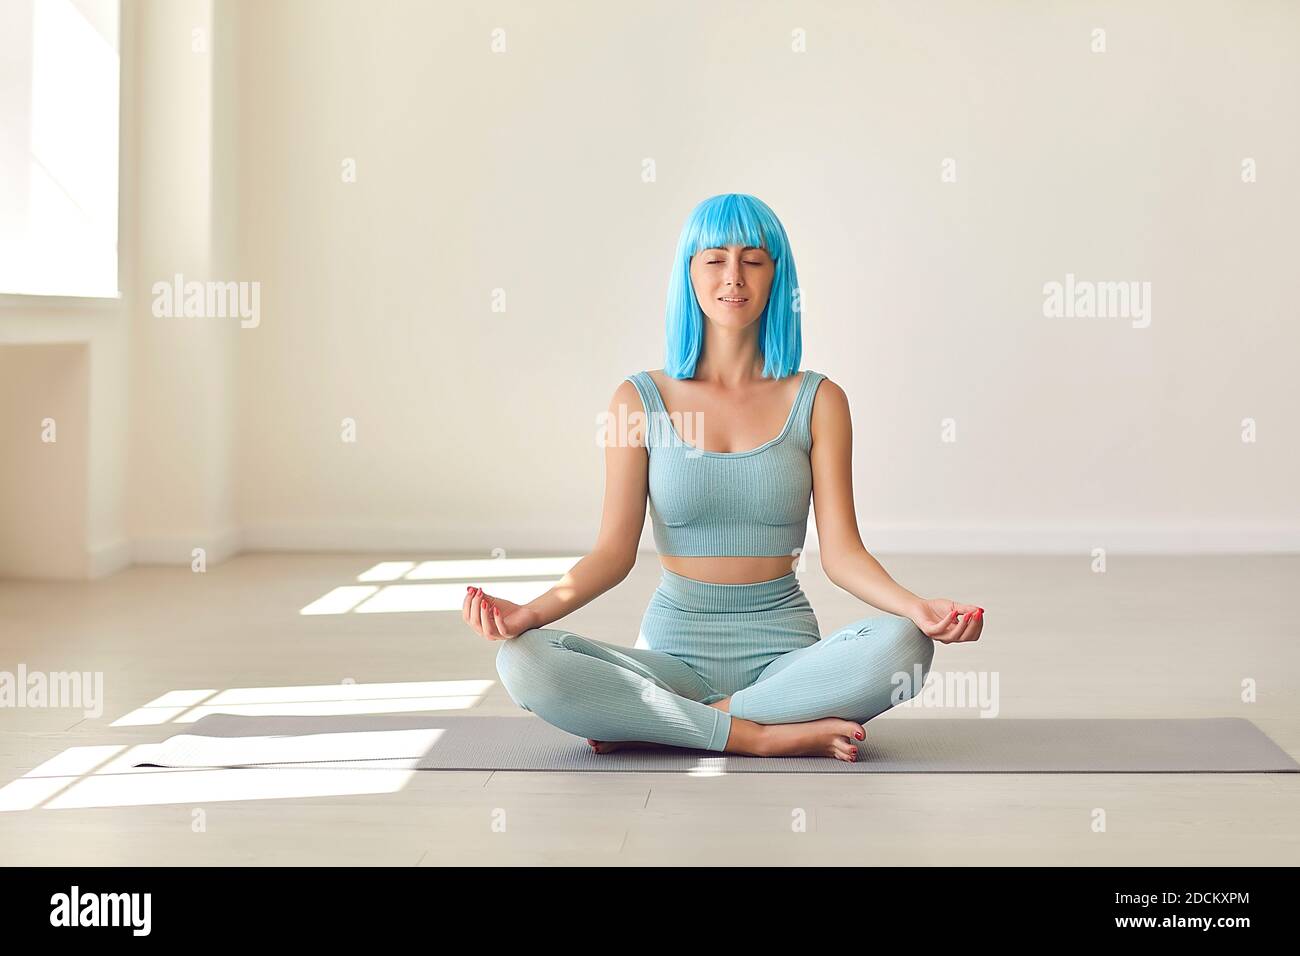 Jeune femme assise en position facile sur un tapis de yoga avec les yeux fermés en profitant d'un moment de calme seul Banque D'Images